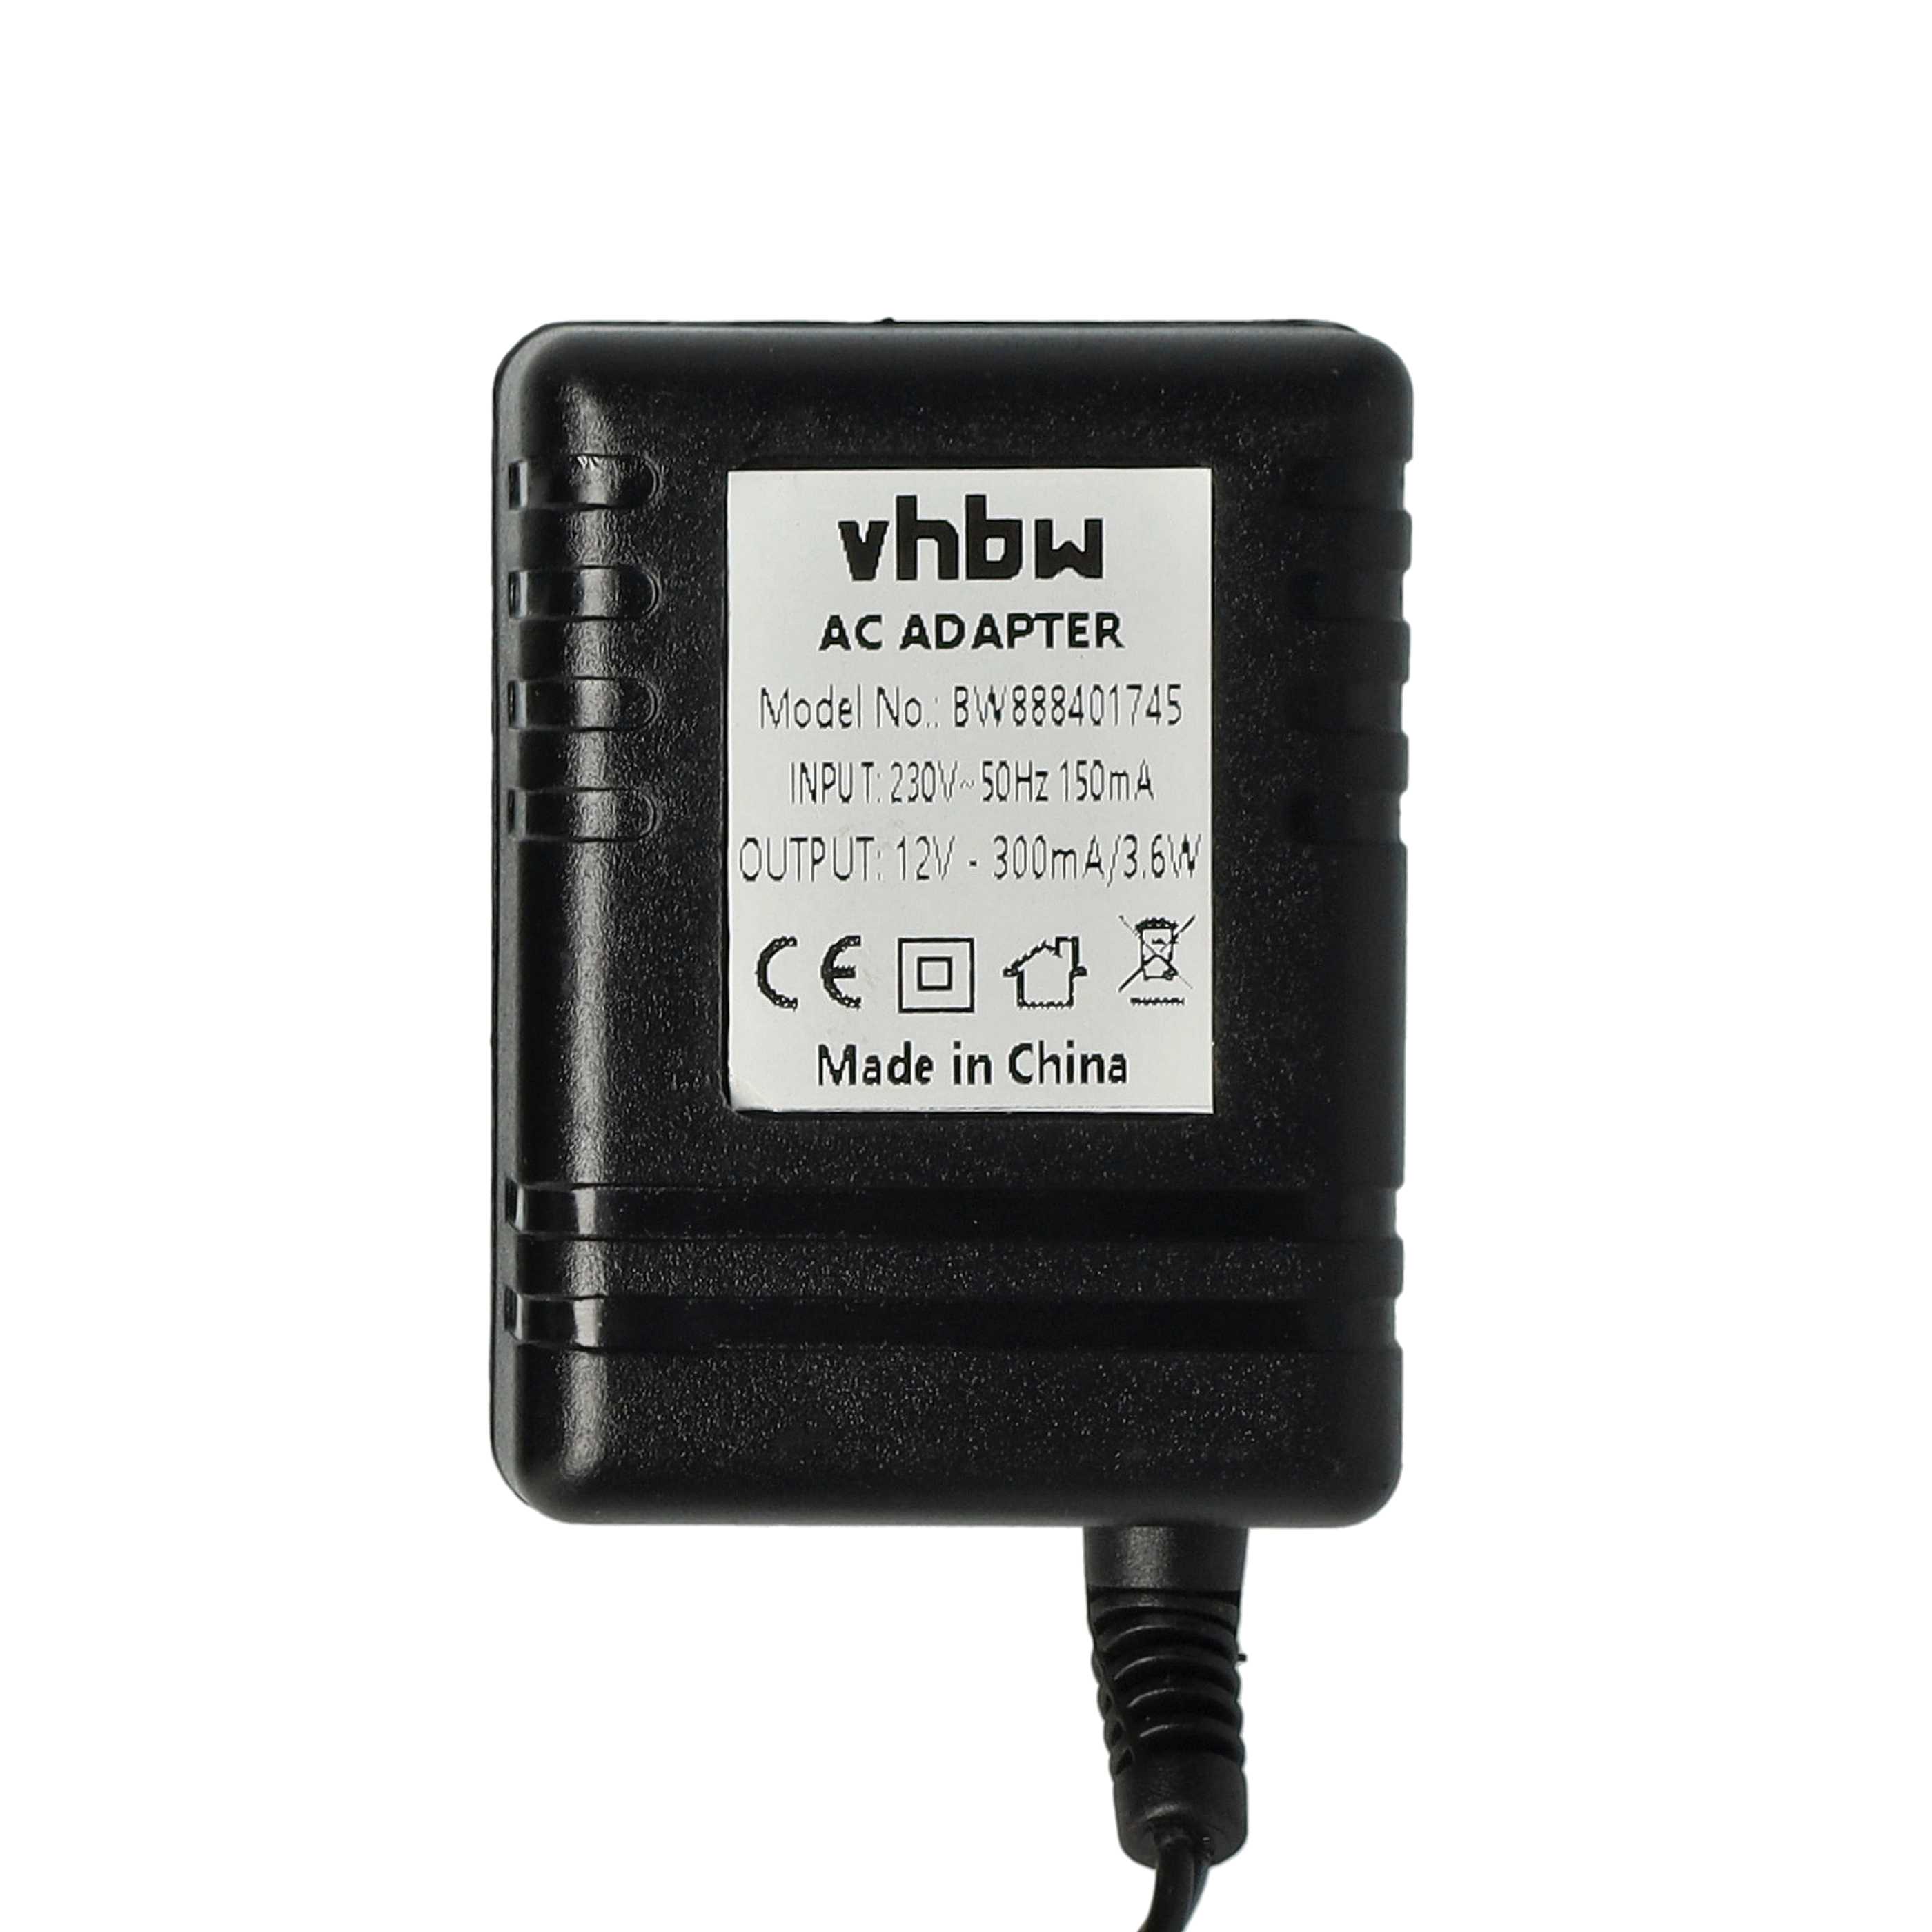 Chargeur + cordon pour batterie de radio IC-F3001 - 12,0 V, 1,6 A